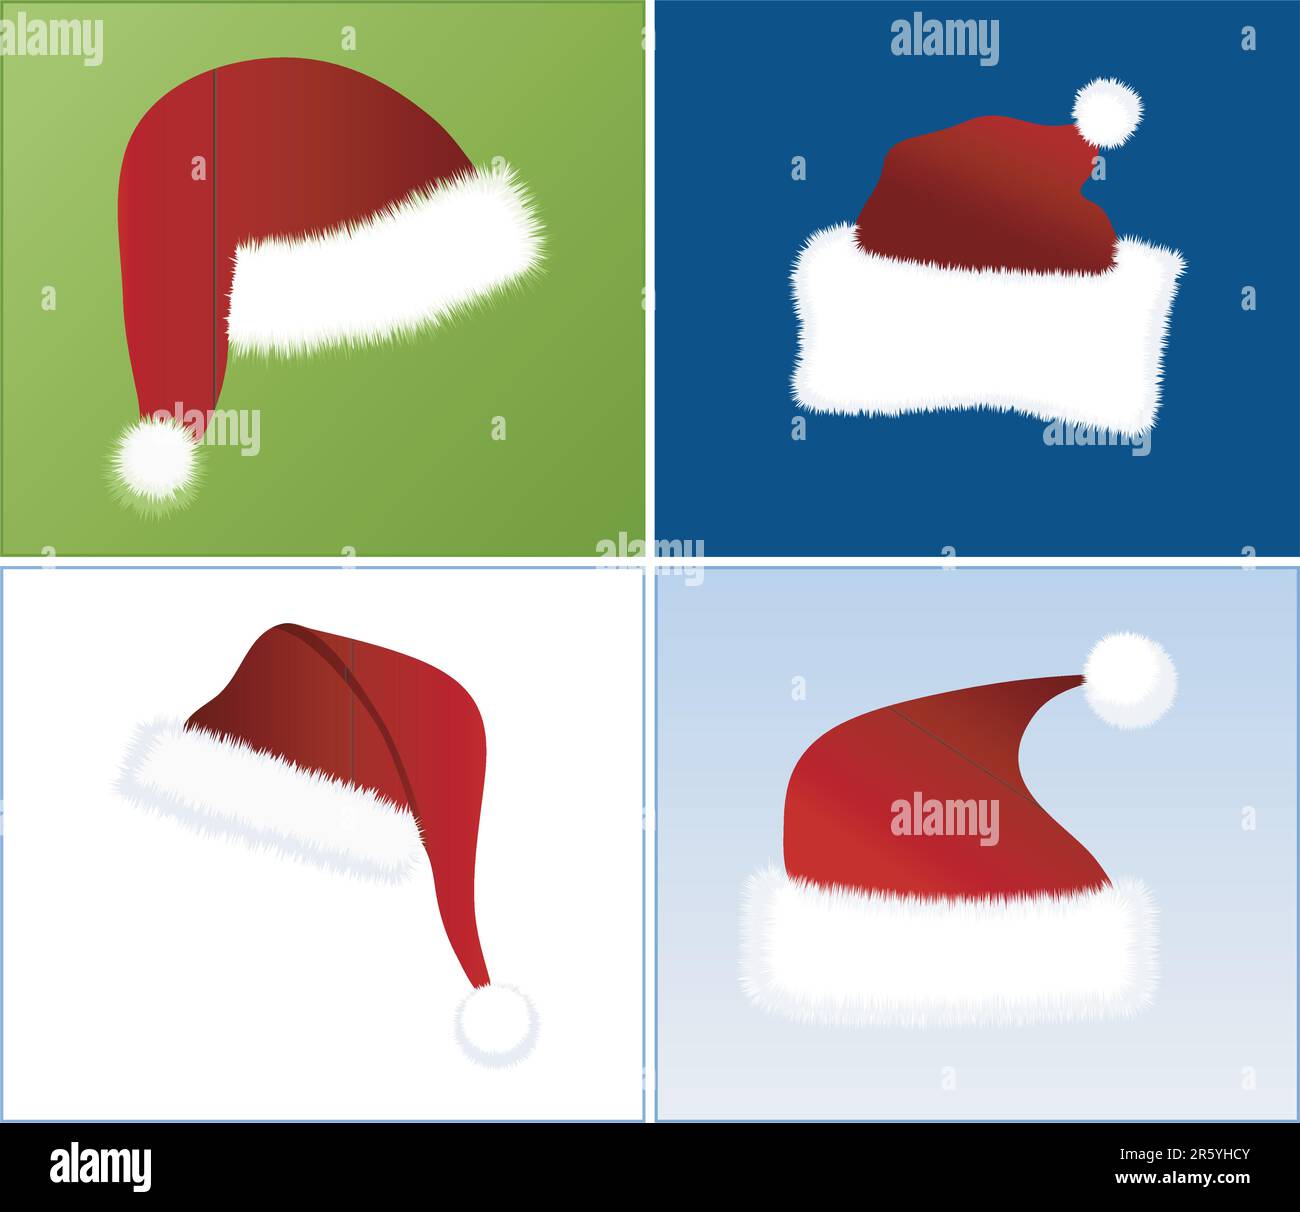 4 vues différentes des chapeaux de Père Noël dans 4 combinaisons de couleurs différentes Illustration de Vecteur